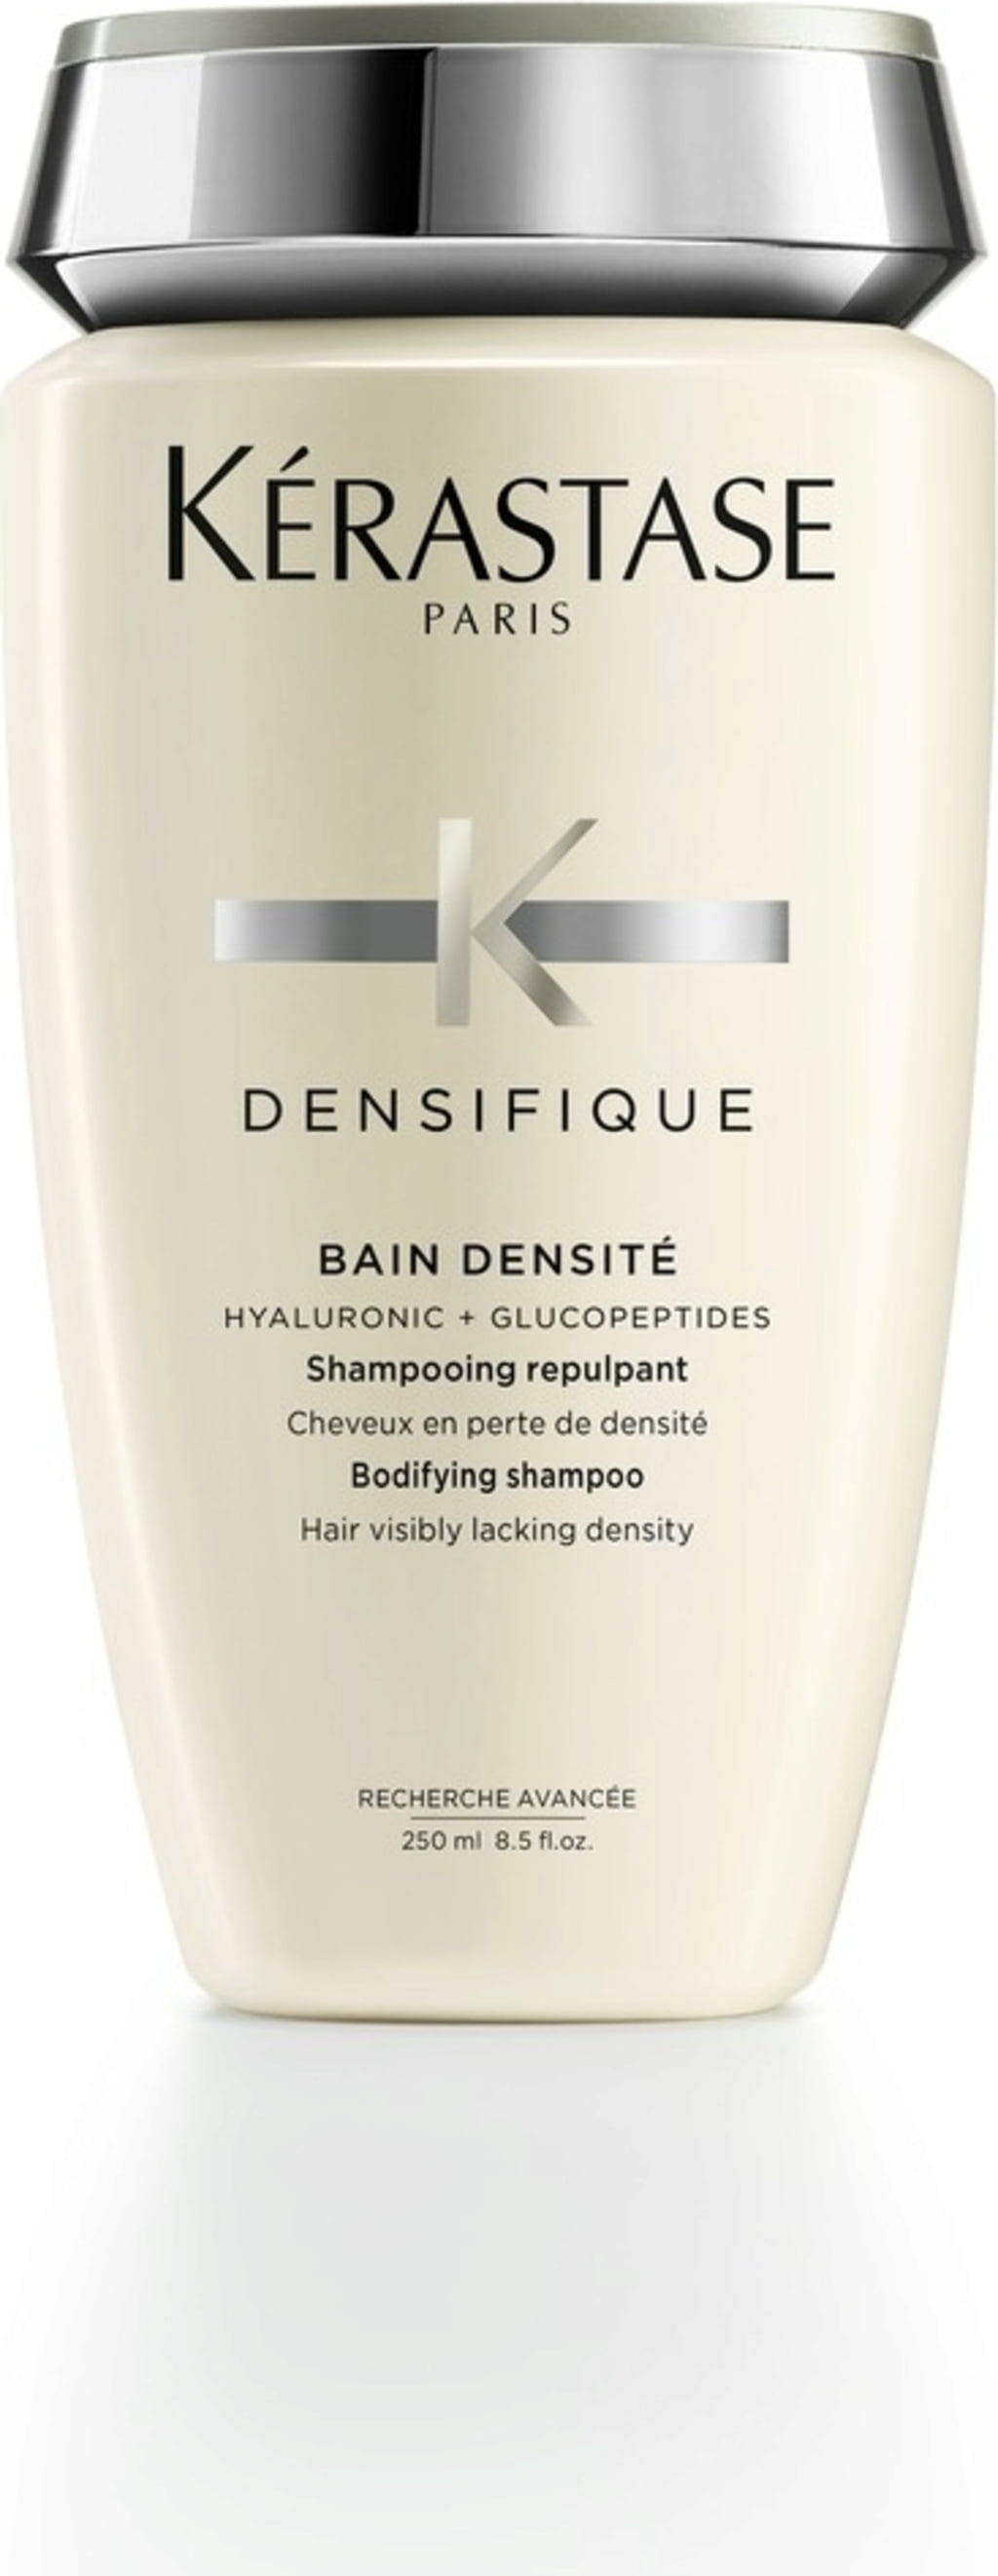 Densifique Densimorphose Mousse For Thinning Hair